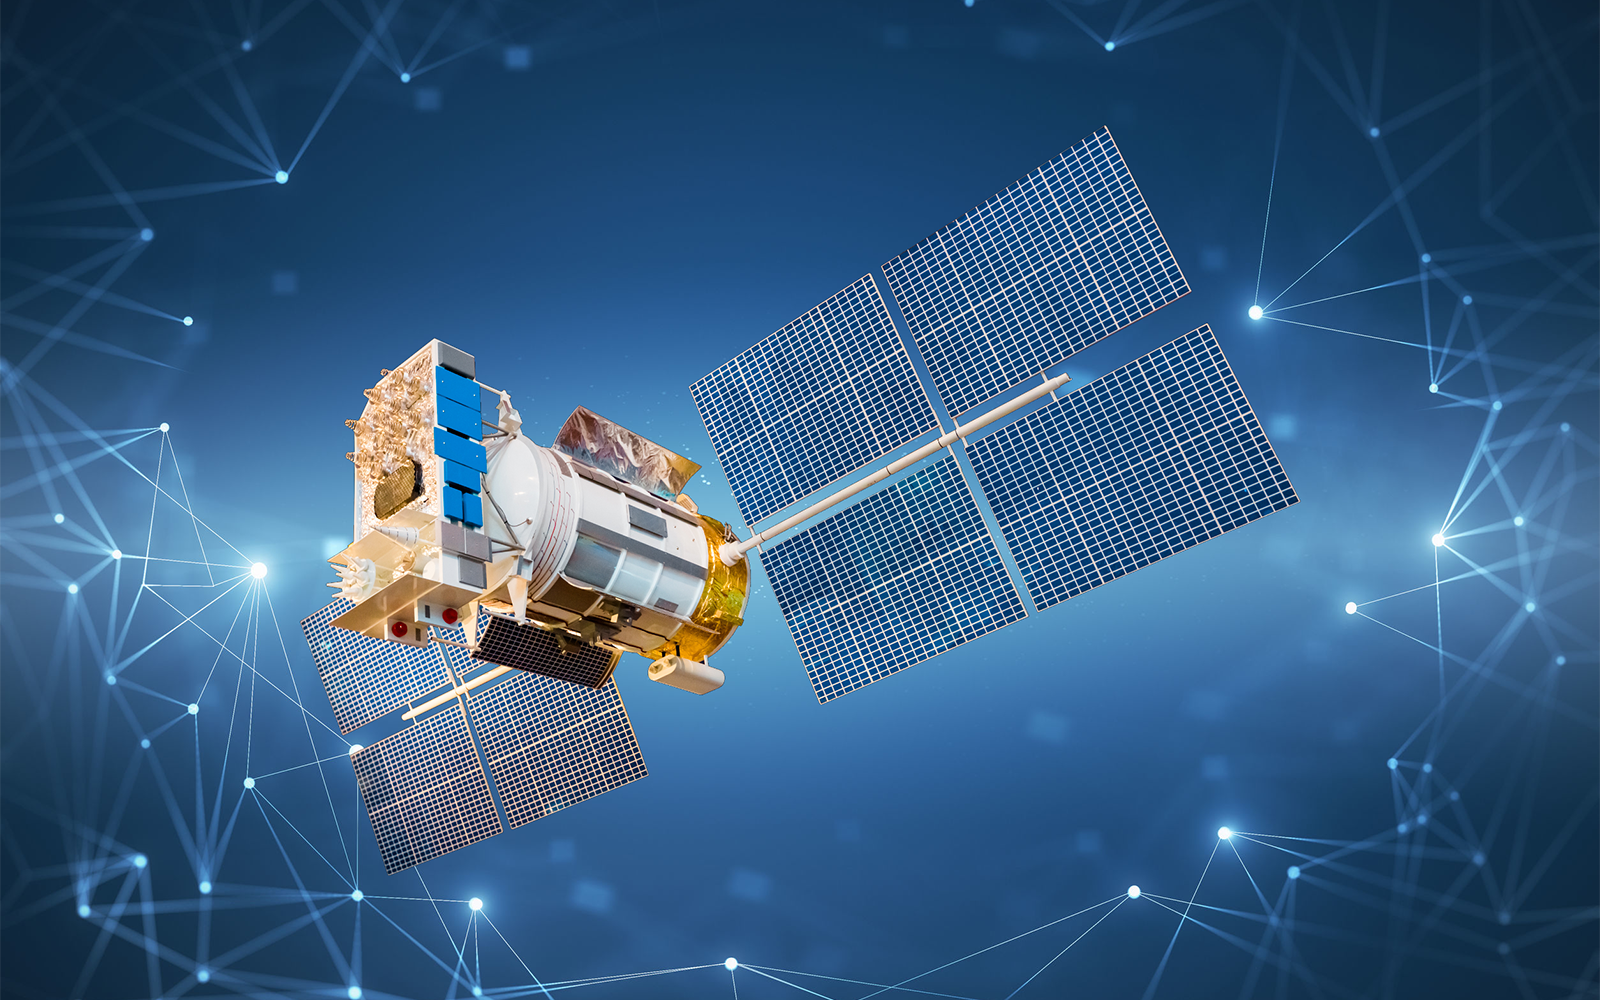 Satellit im Weltraum mit KI-Netzstrukturen überlagert